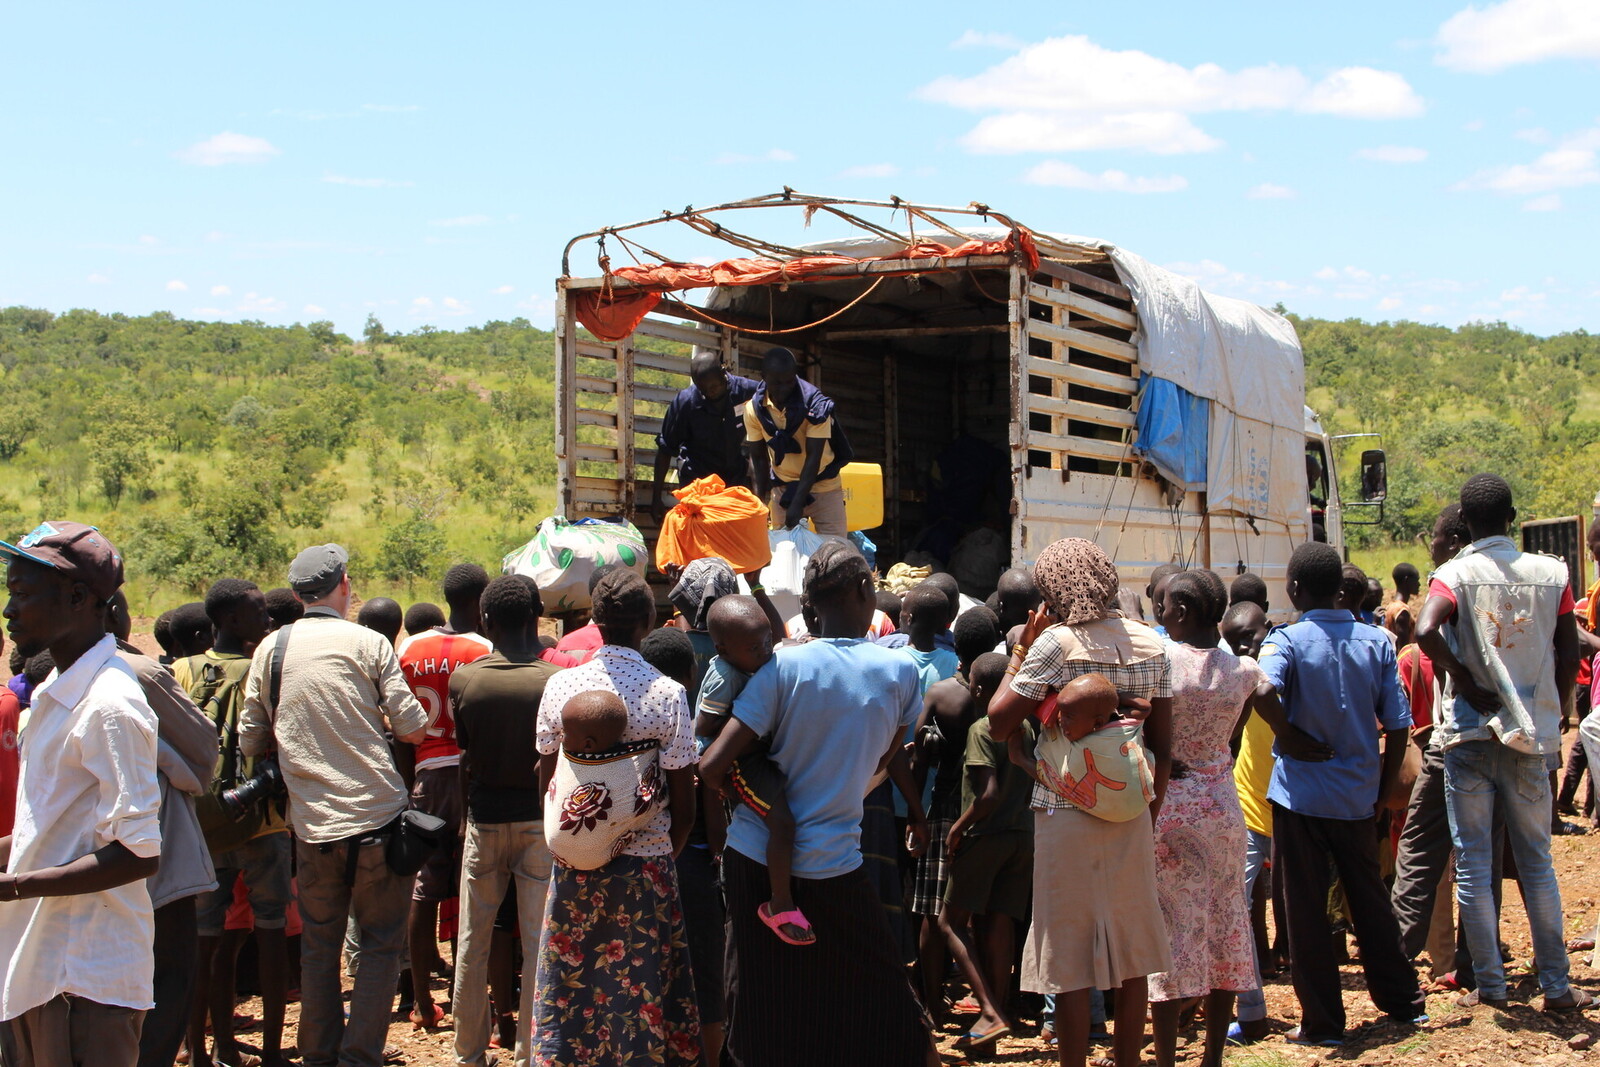 Ankunft in Uganda: Mit Wagen wie diesem werden die Menschen in die Regionen gebracht, in denen sie eine sichere Unterkunft finden.